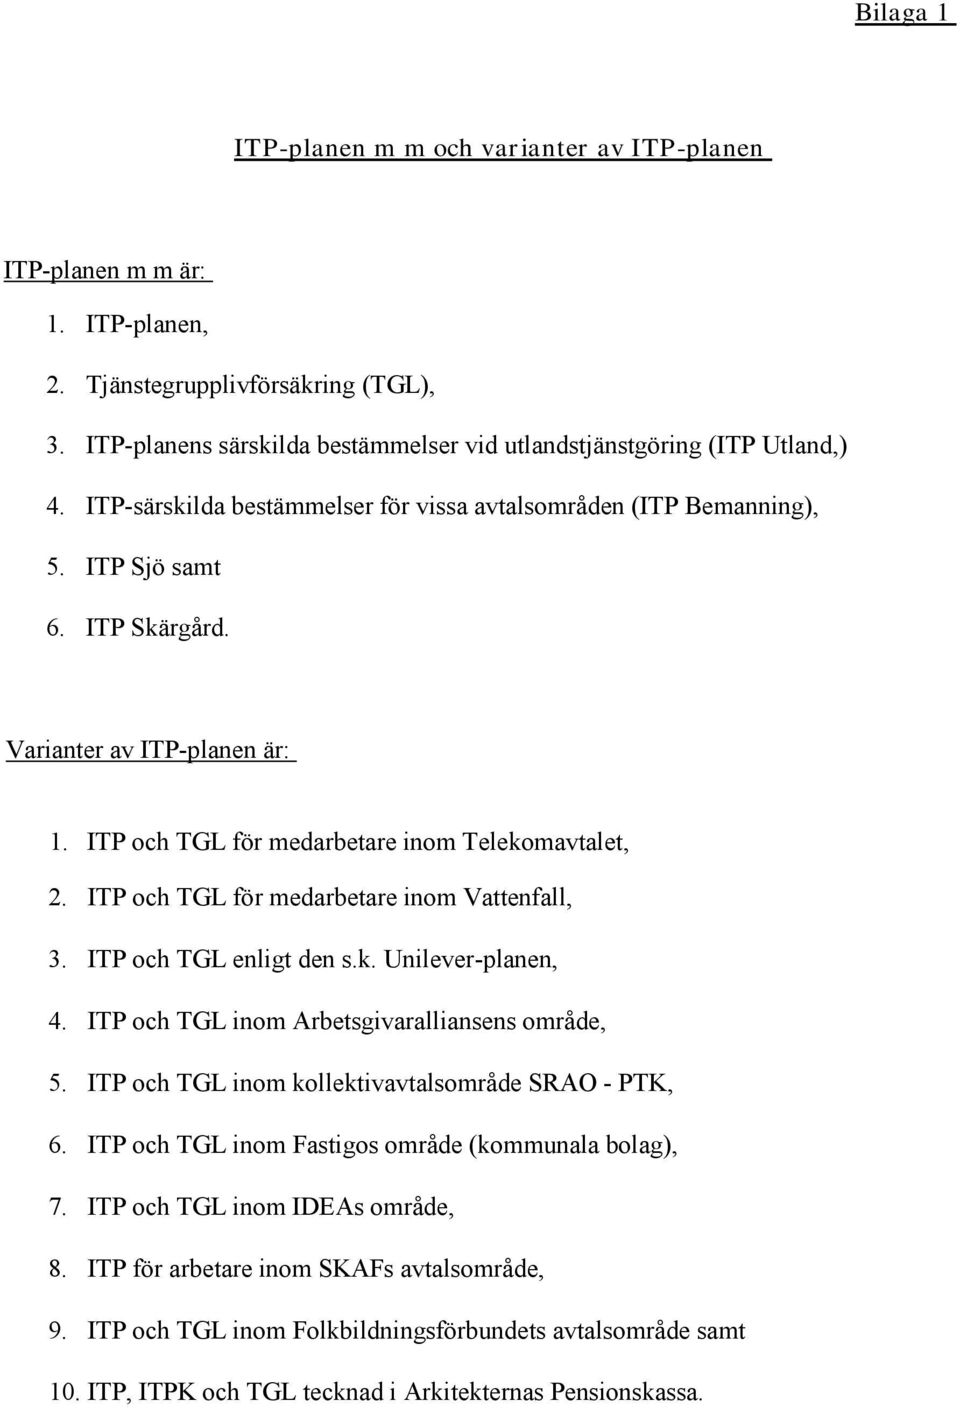 ITP och TGL för medarbetare inom Vattenfall, 3. ITP och TGL enligt den s.k. Unilever-planen, 4. ITP och TGL inom Arbetsgivaralliansens område, 5. ITP och TGL inom kollektivavtalsområde SRAO - PTK, 6.